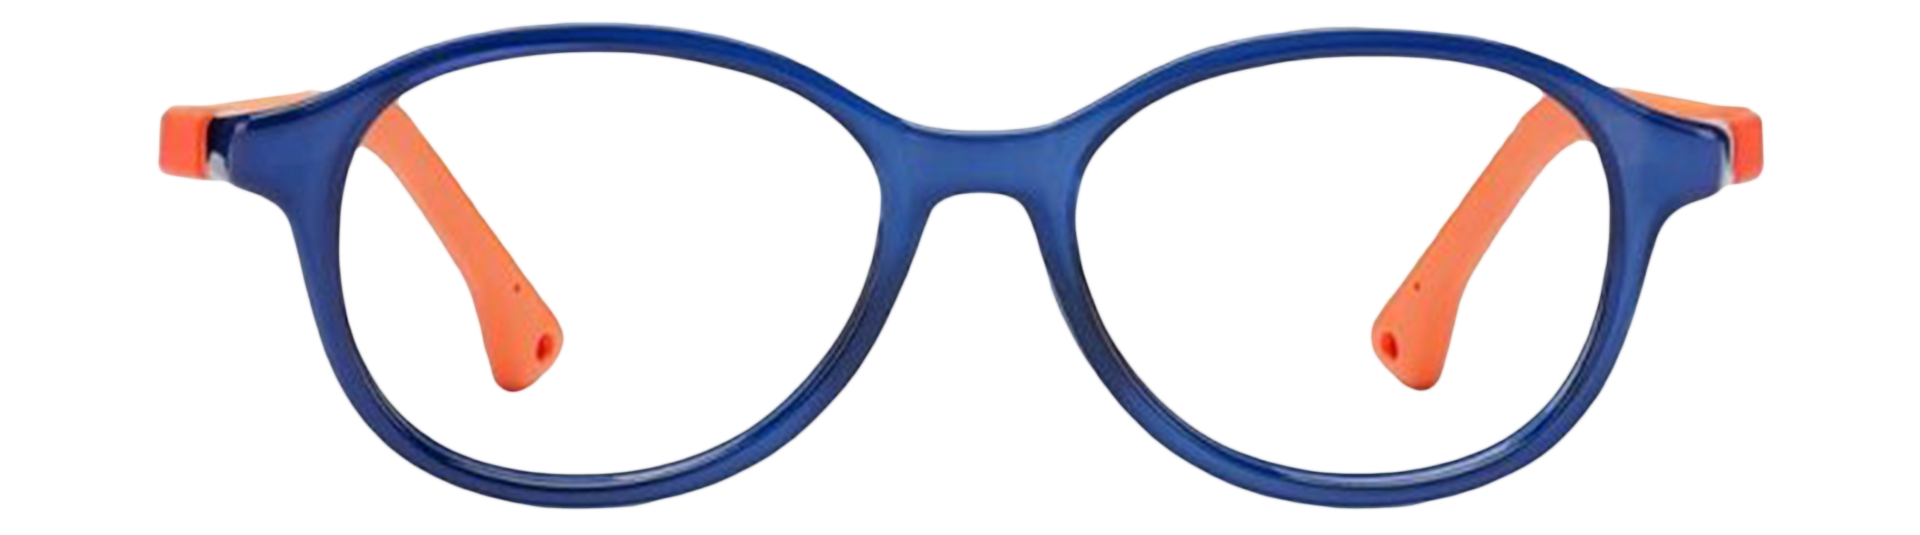 Nano Vista glasses frame for kids